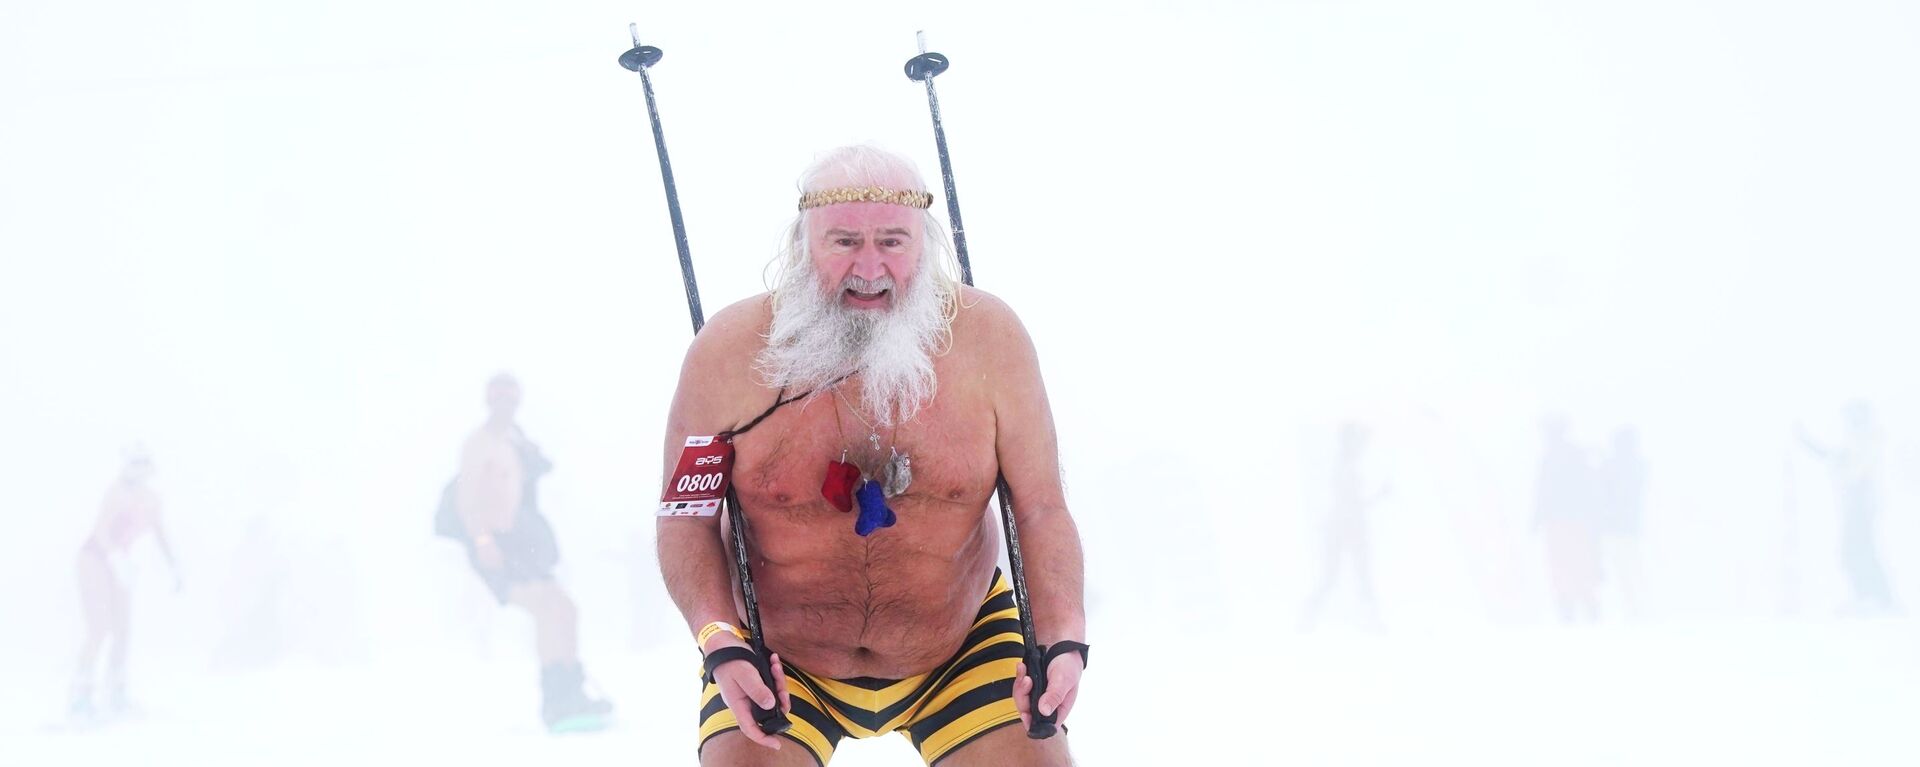 Участник высокогорного карнавала BoogelWoogel-2019 во время массового спуска с горы в купальниках на горнолыжном курорте Роза Хутор в Сочи - Sputnik Латвия, 1920, 17.02.2021